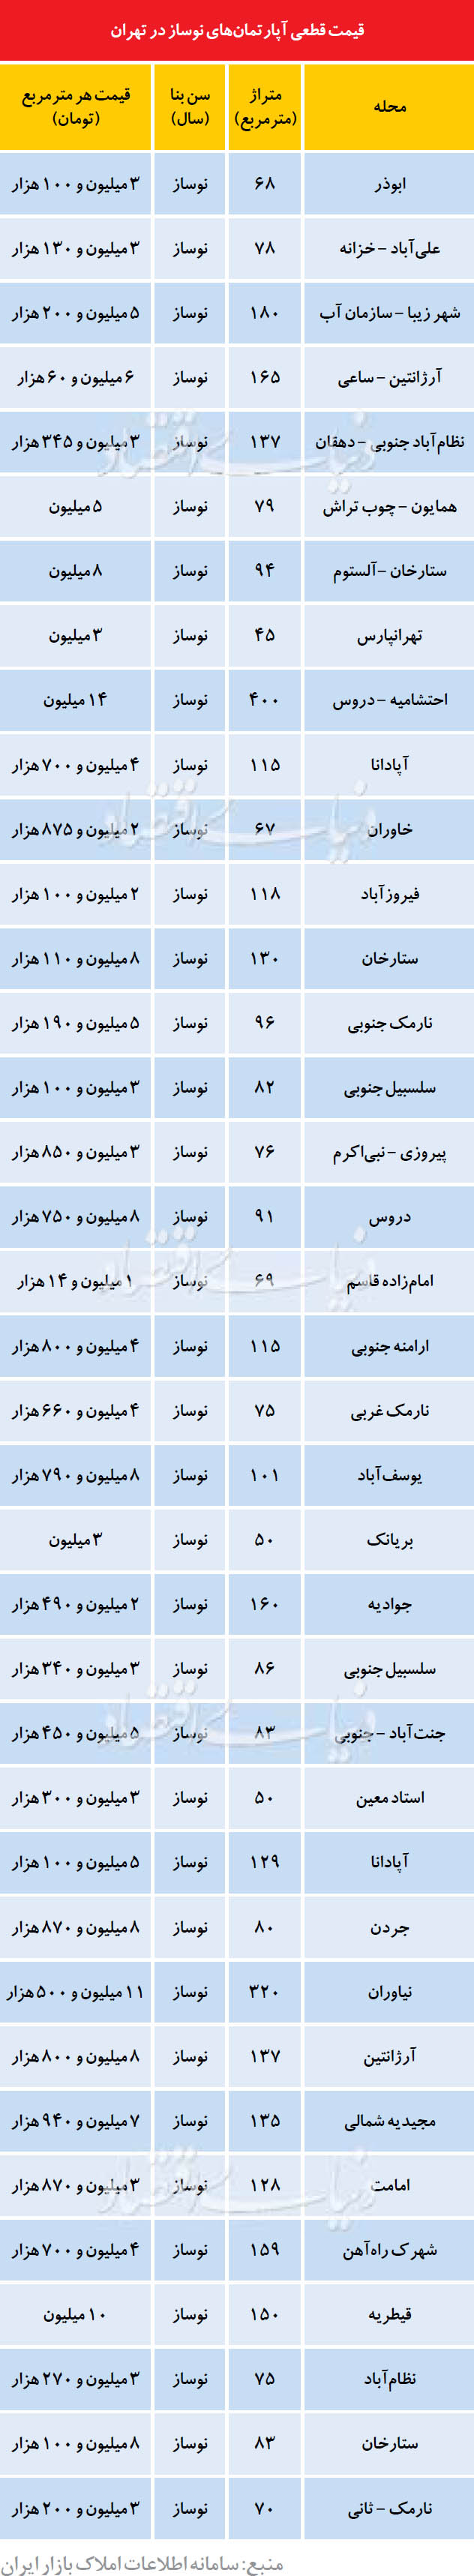 قیمت آپارتمان های نوساز در تهران (جدول)